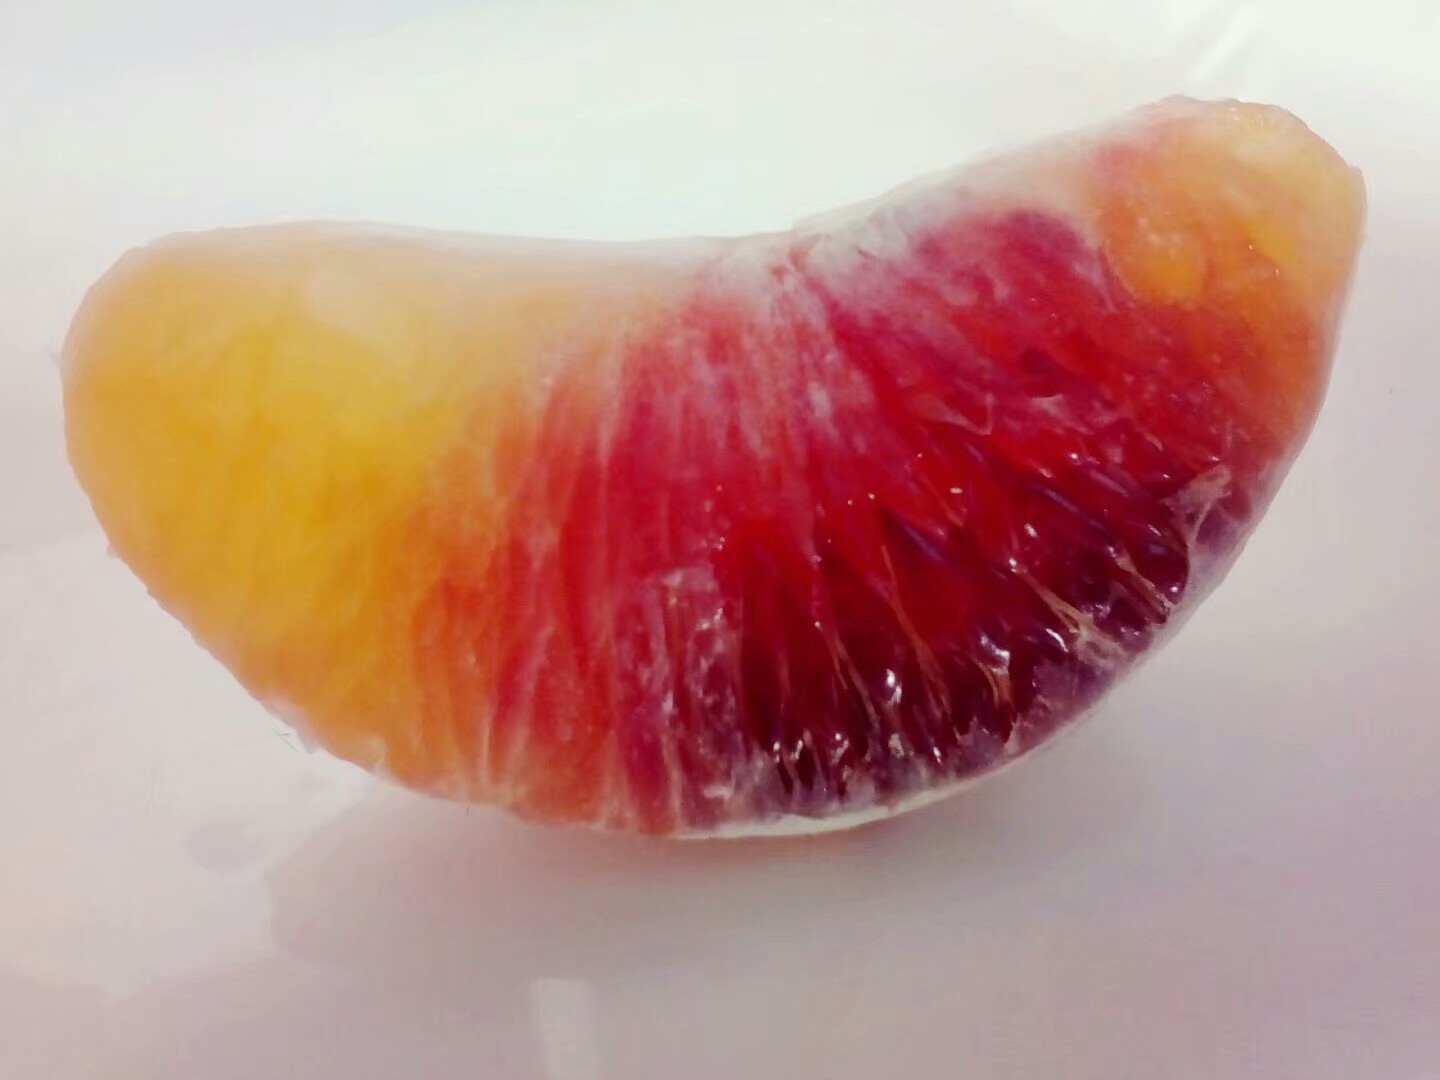 红心柚子染色图片